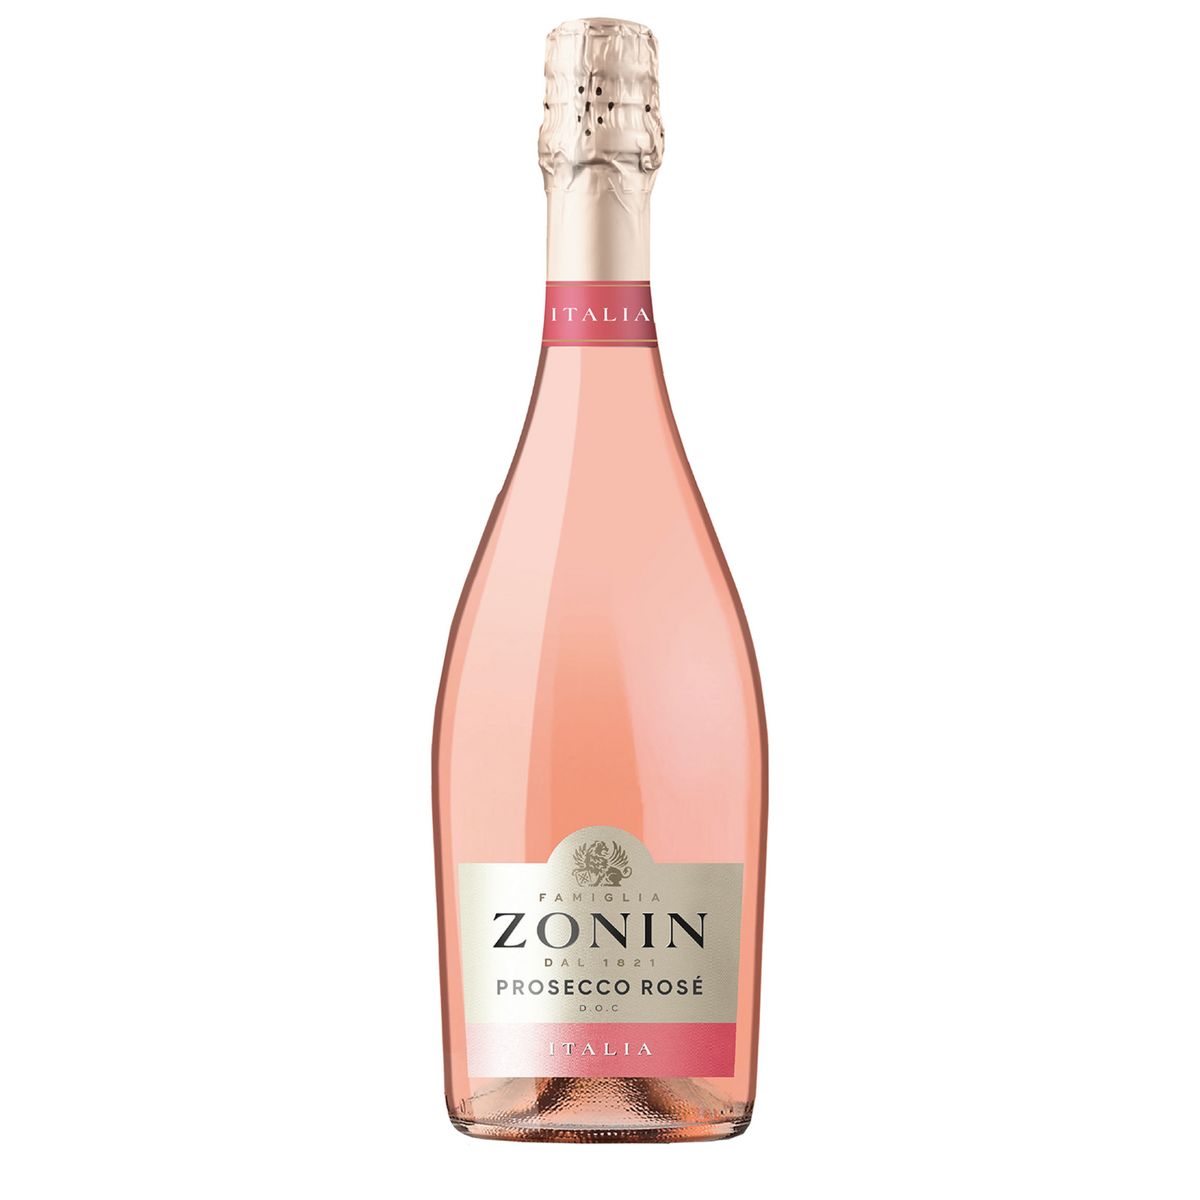 FAMIGLIA ZONIN DOC Vin effervescent Prosecco Zonin rosé 75cl